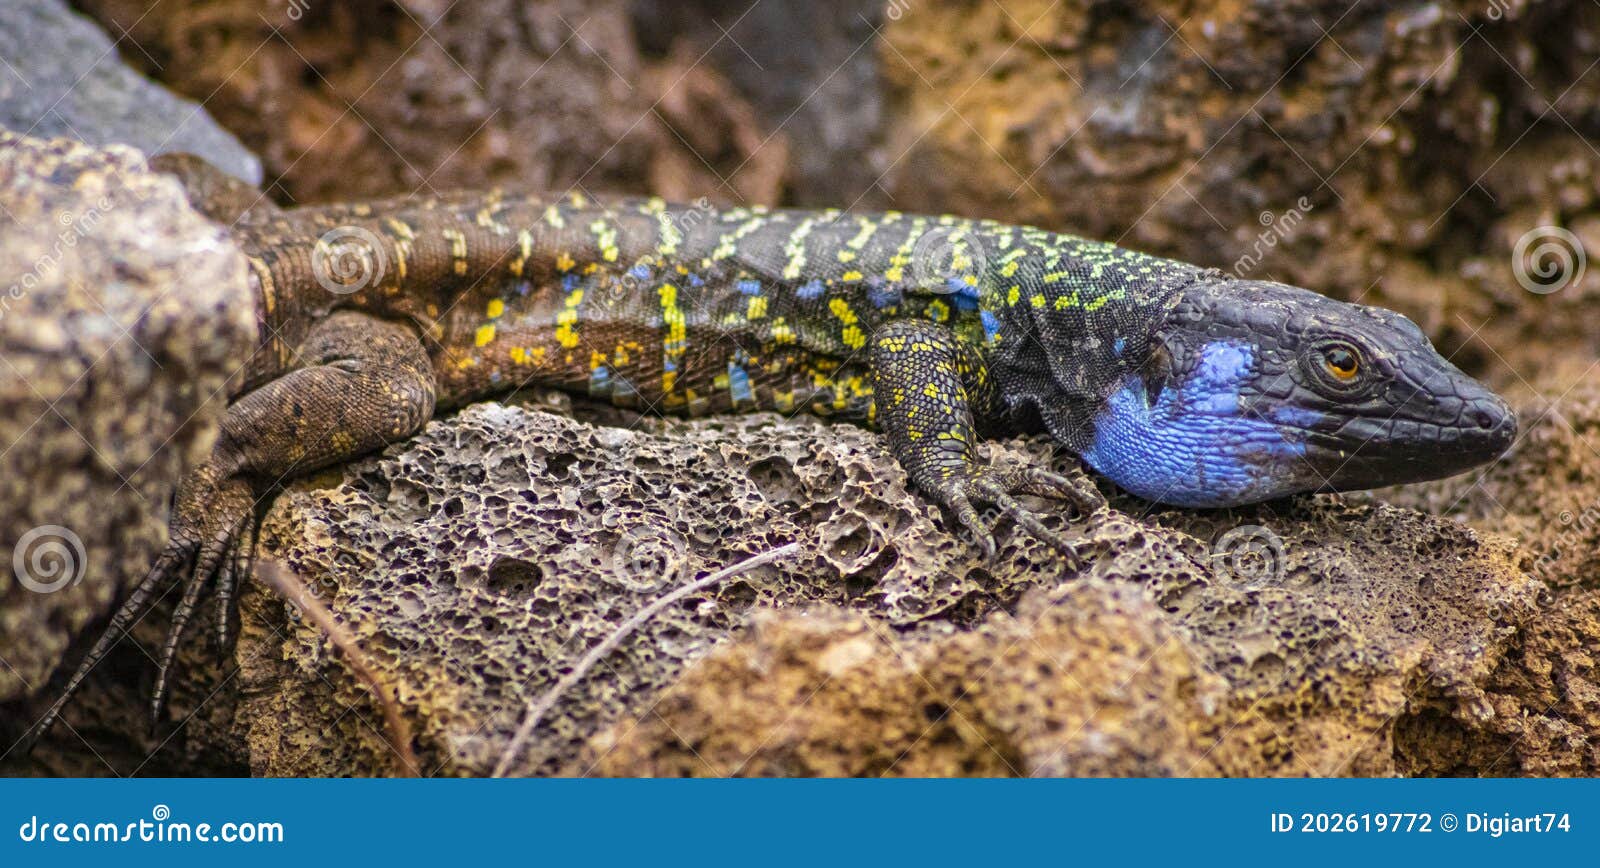 lagarto tizÃÂ³n -  typical lizard of tenerife